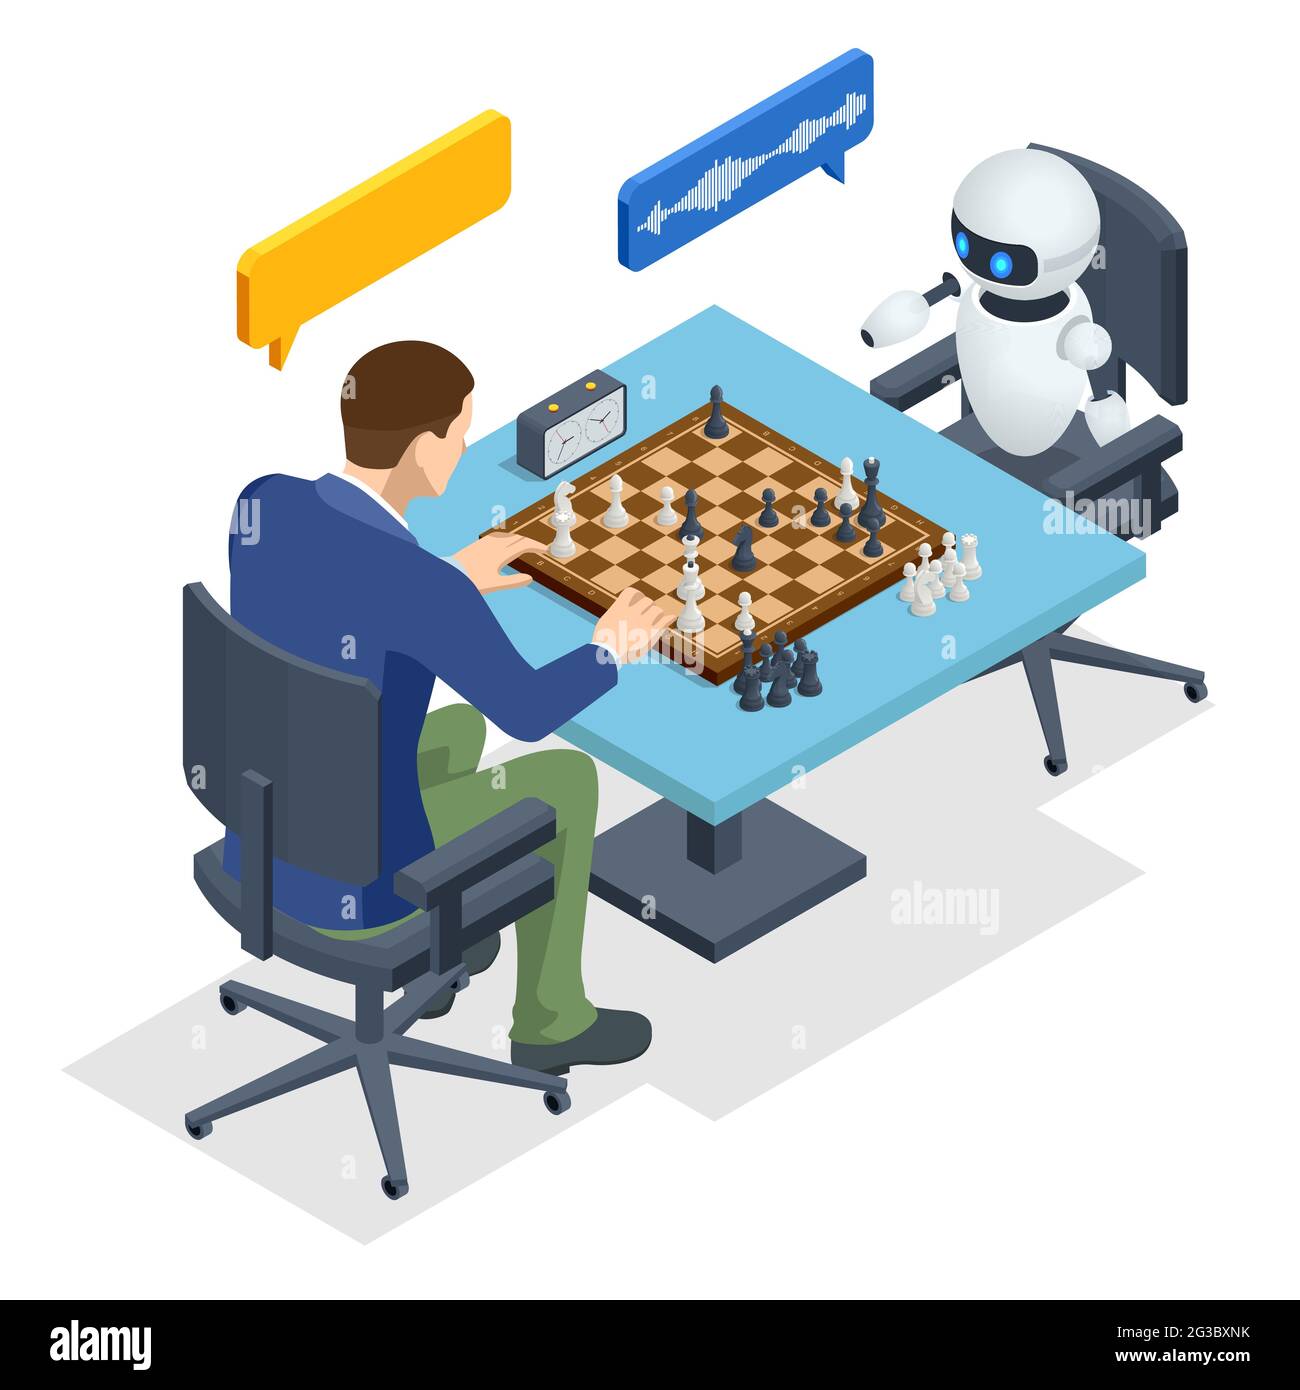 Chess: Computer v. Human